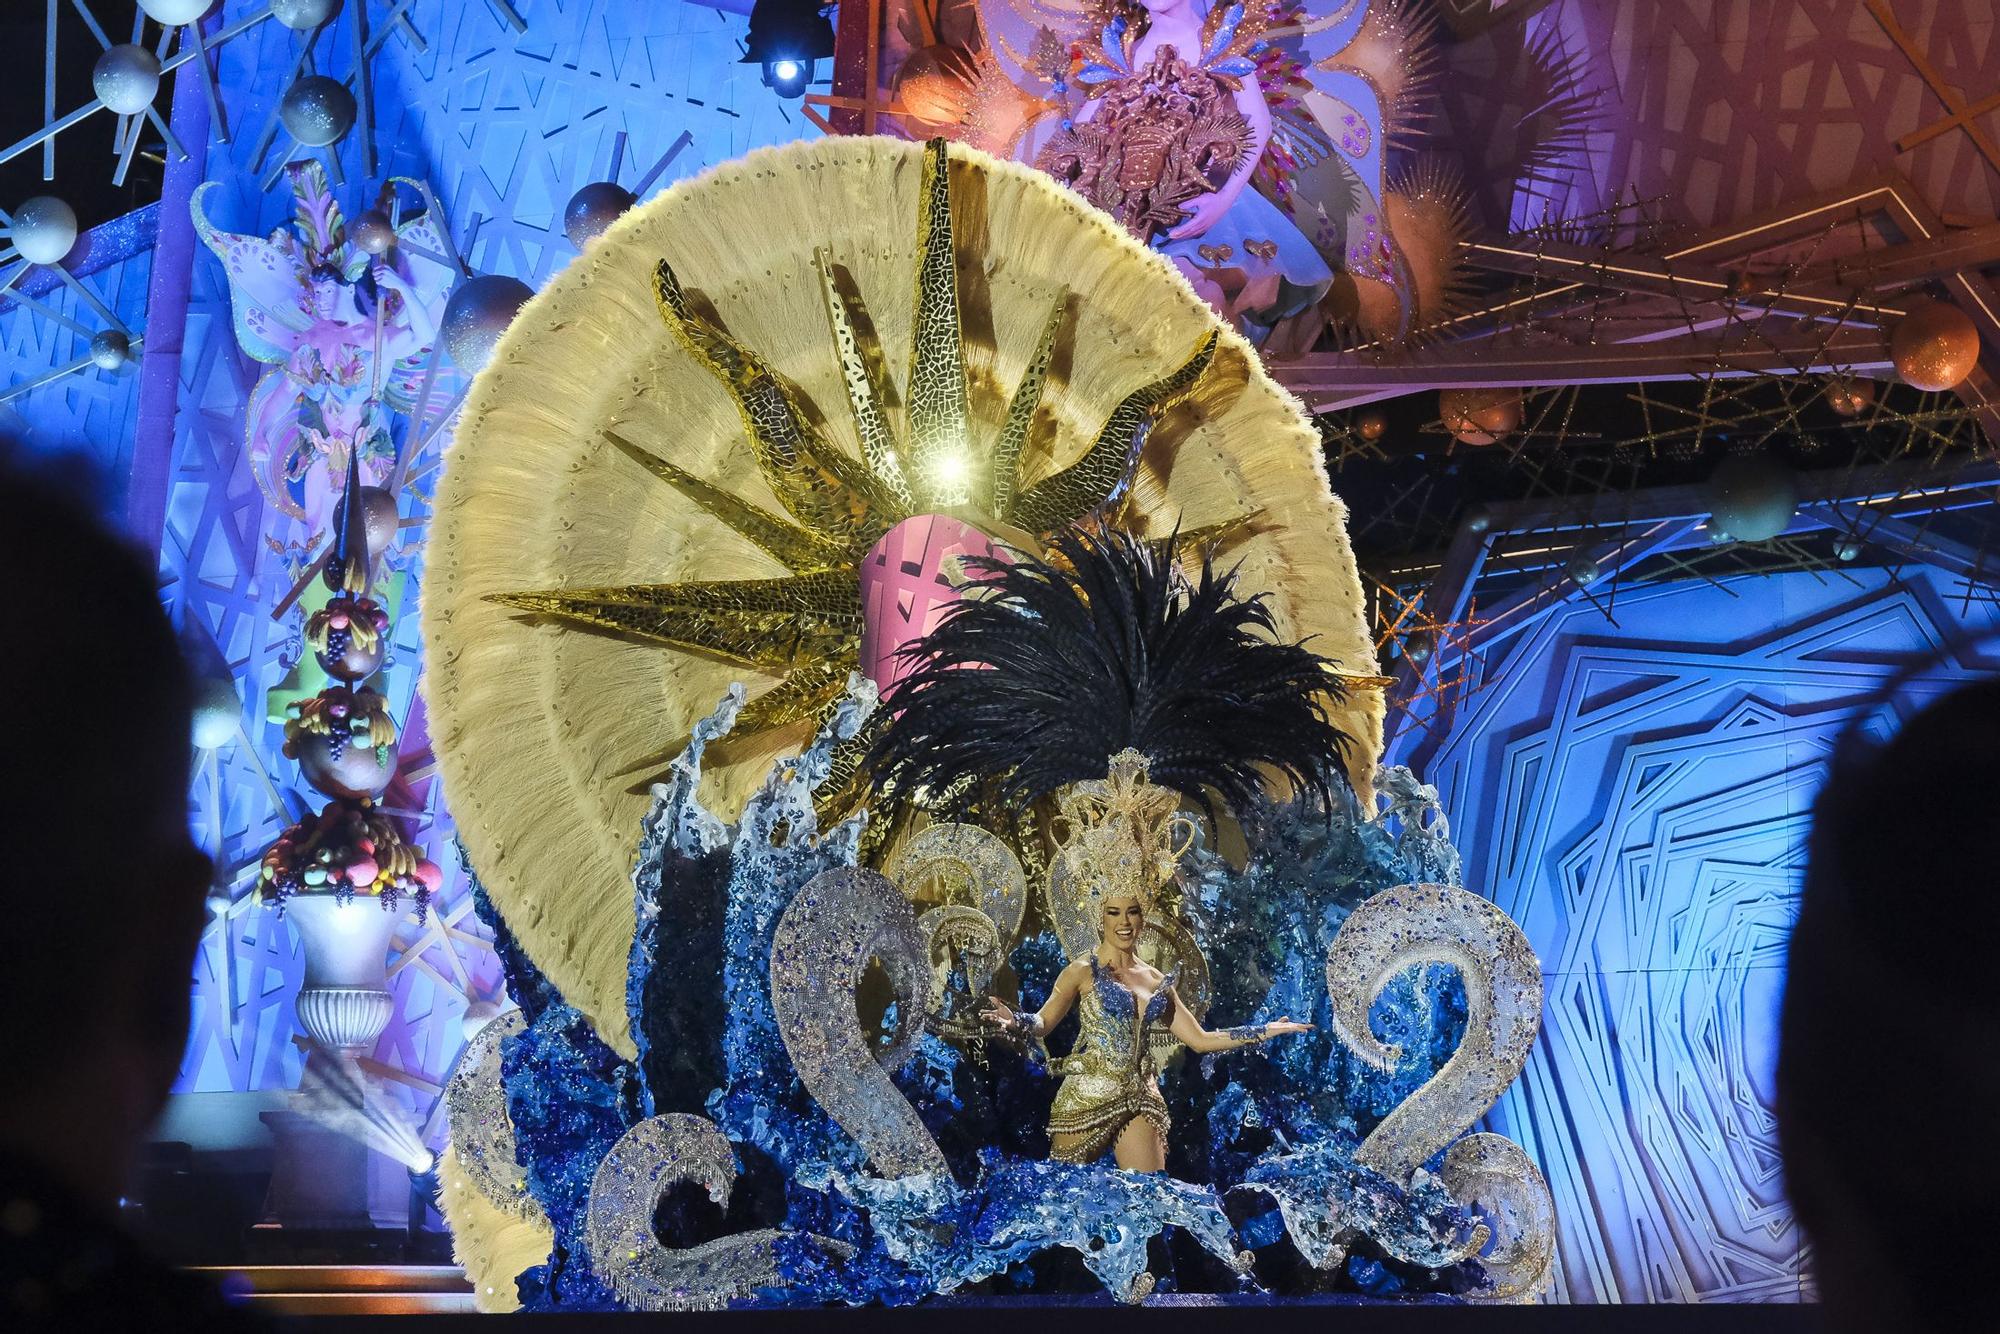 Capross 2004 S.L. presenta a María del Mar Reyes Falcón con la fantasía ‘Sueño de cristal’ diseñada por Josué Saavedra Suárez